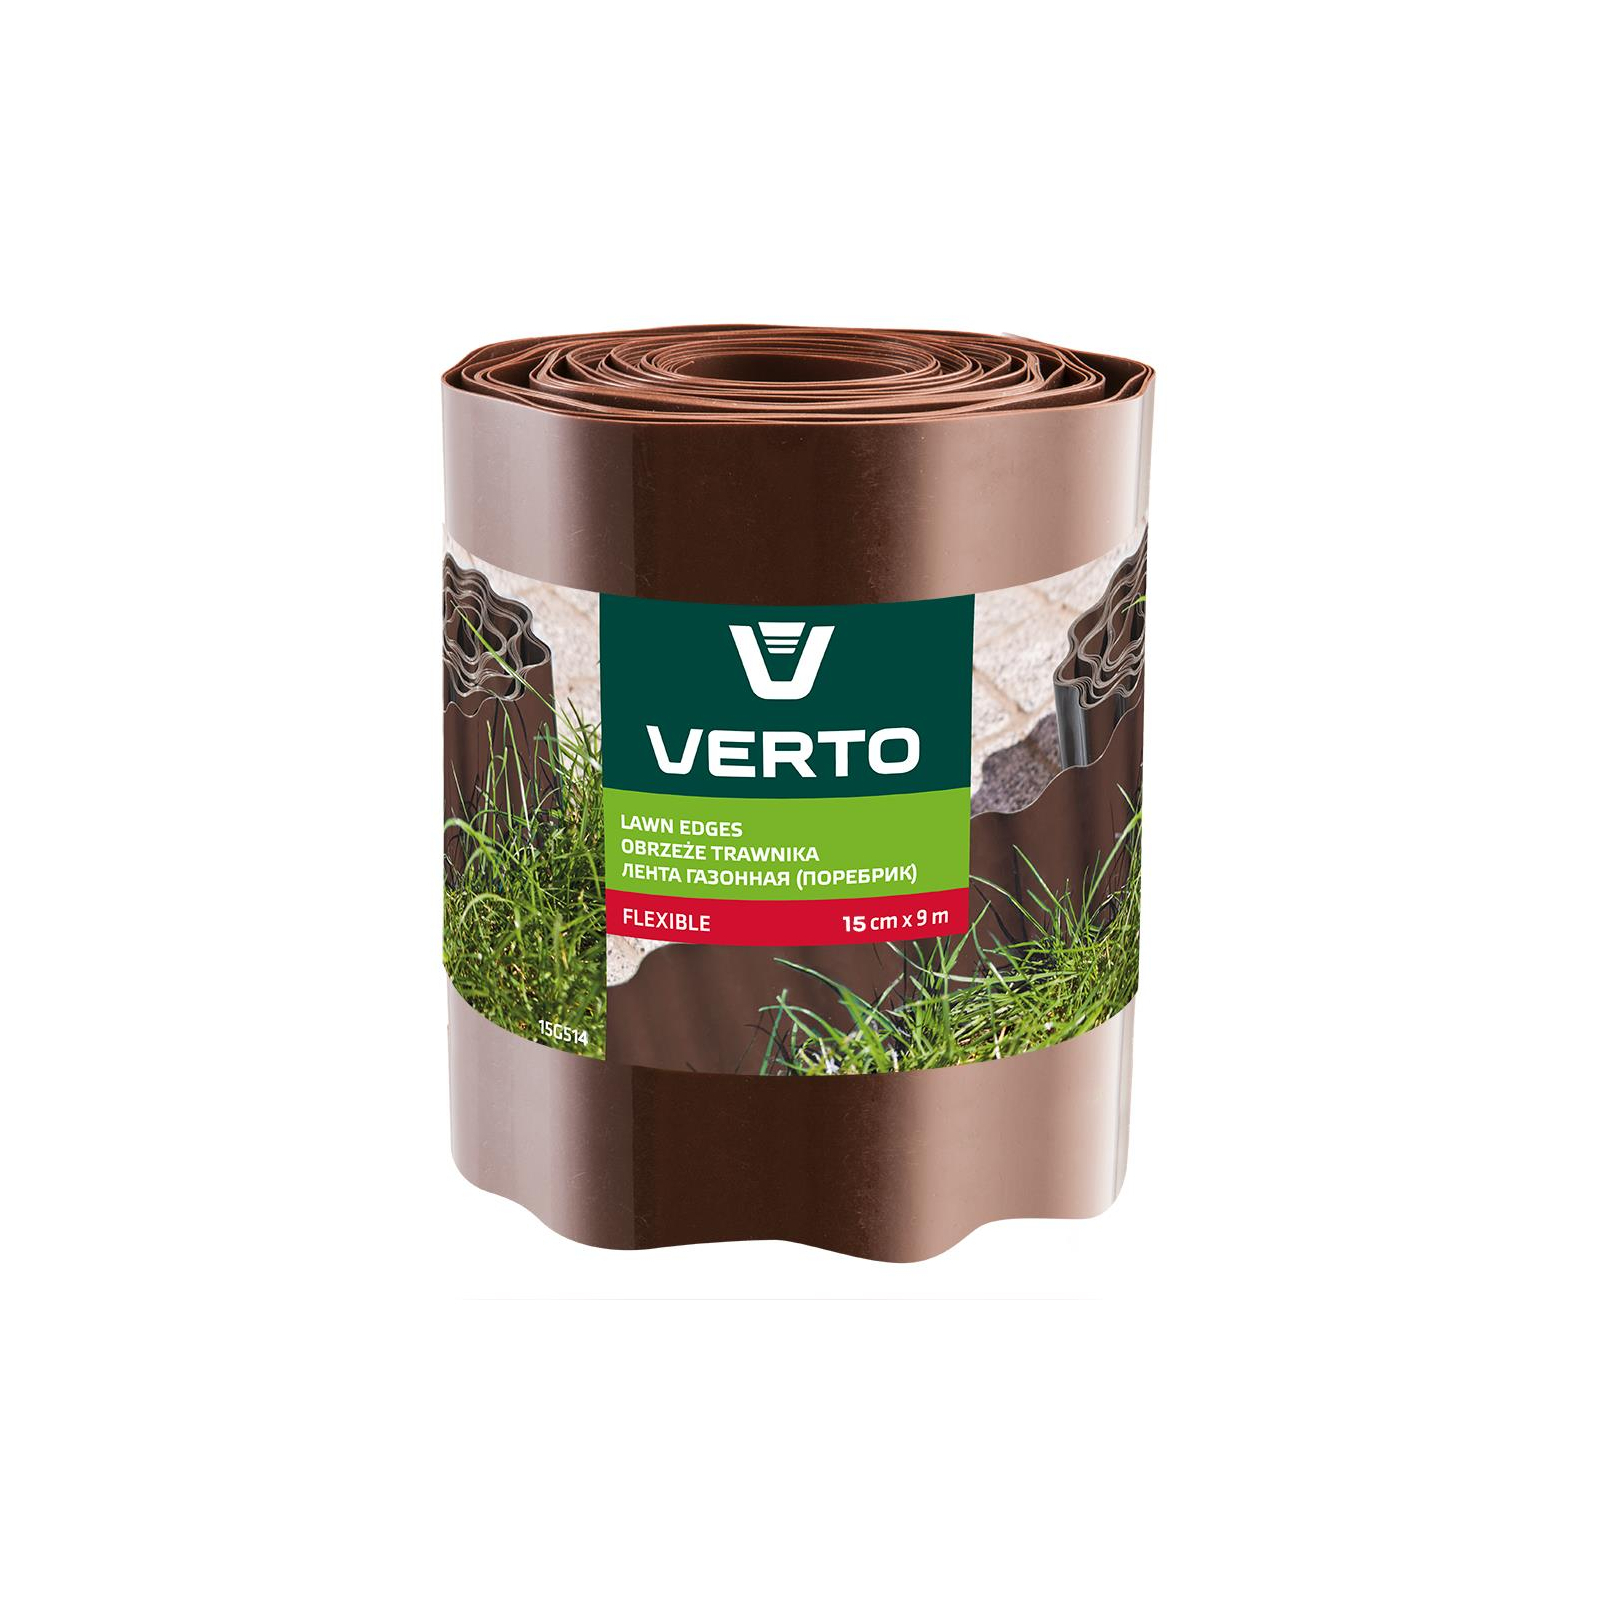 Садовое ограждение Verto лента газонная, бордюрная, волнистая, 15смх9м, коричневая (15G514)